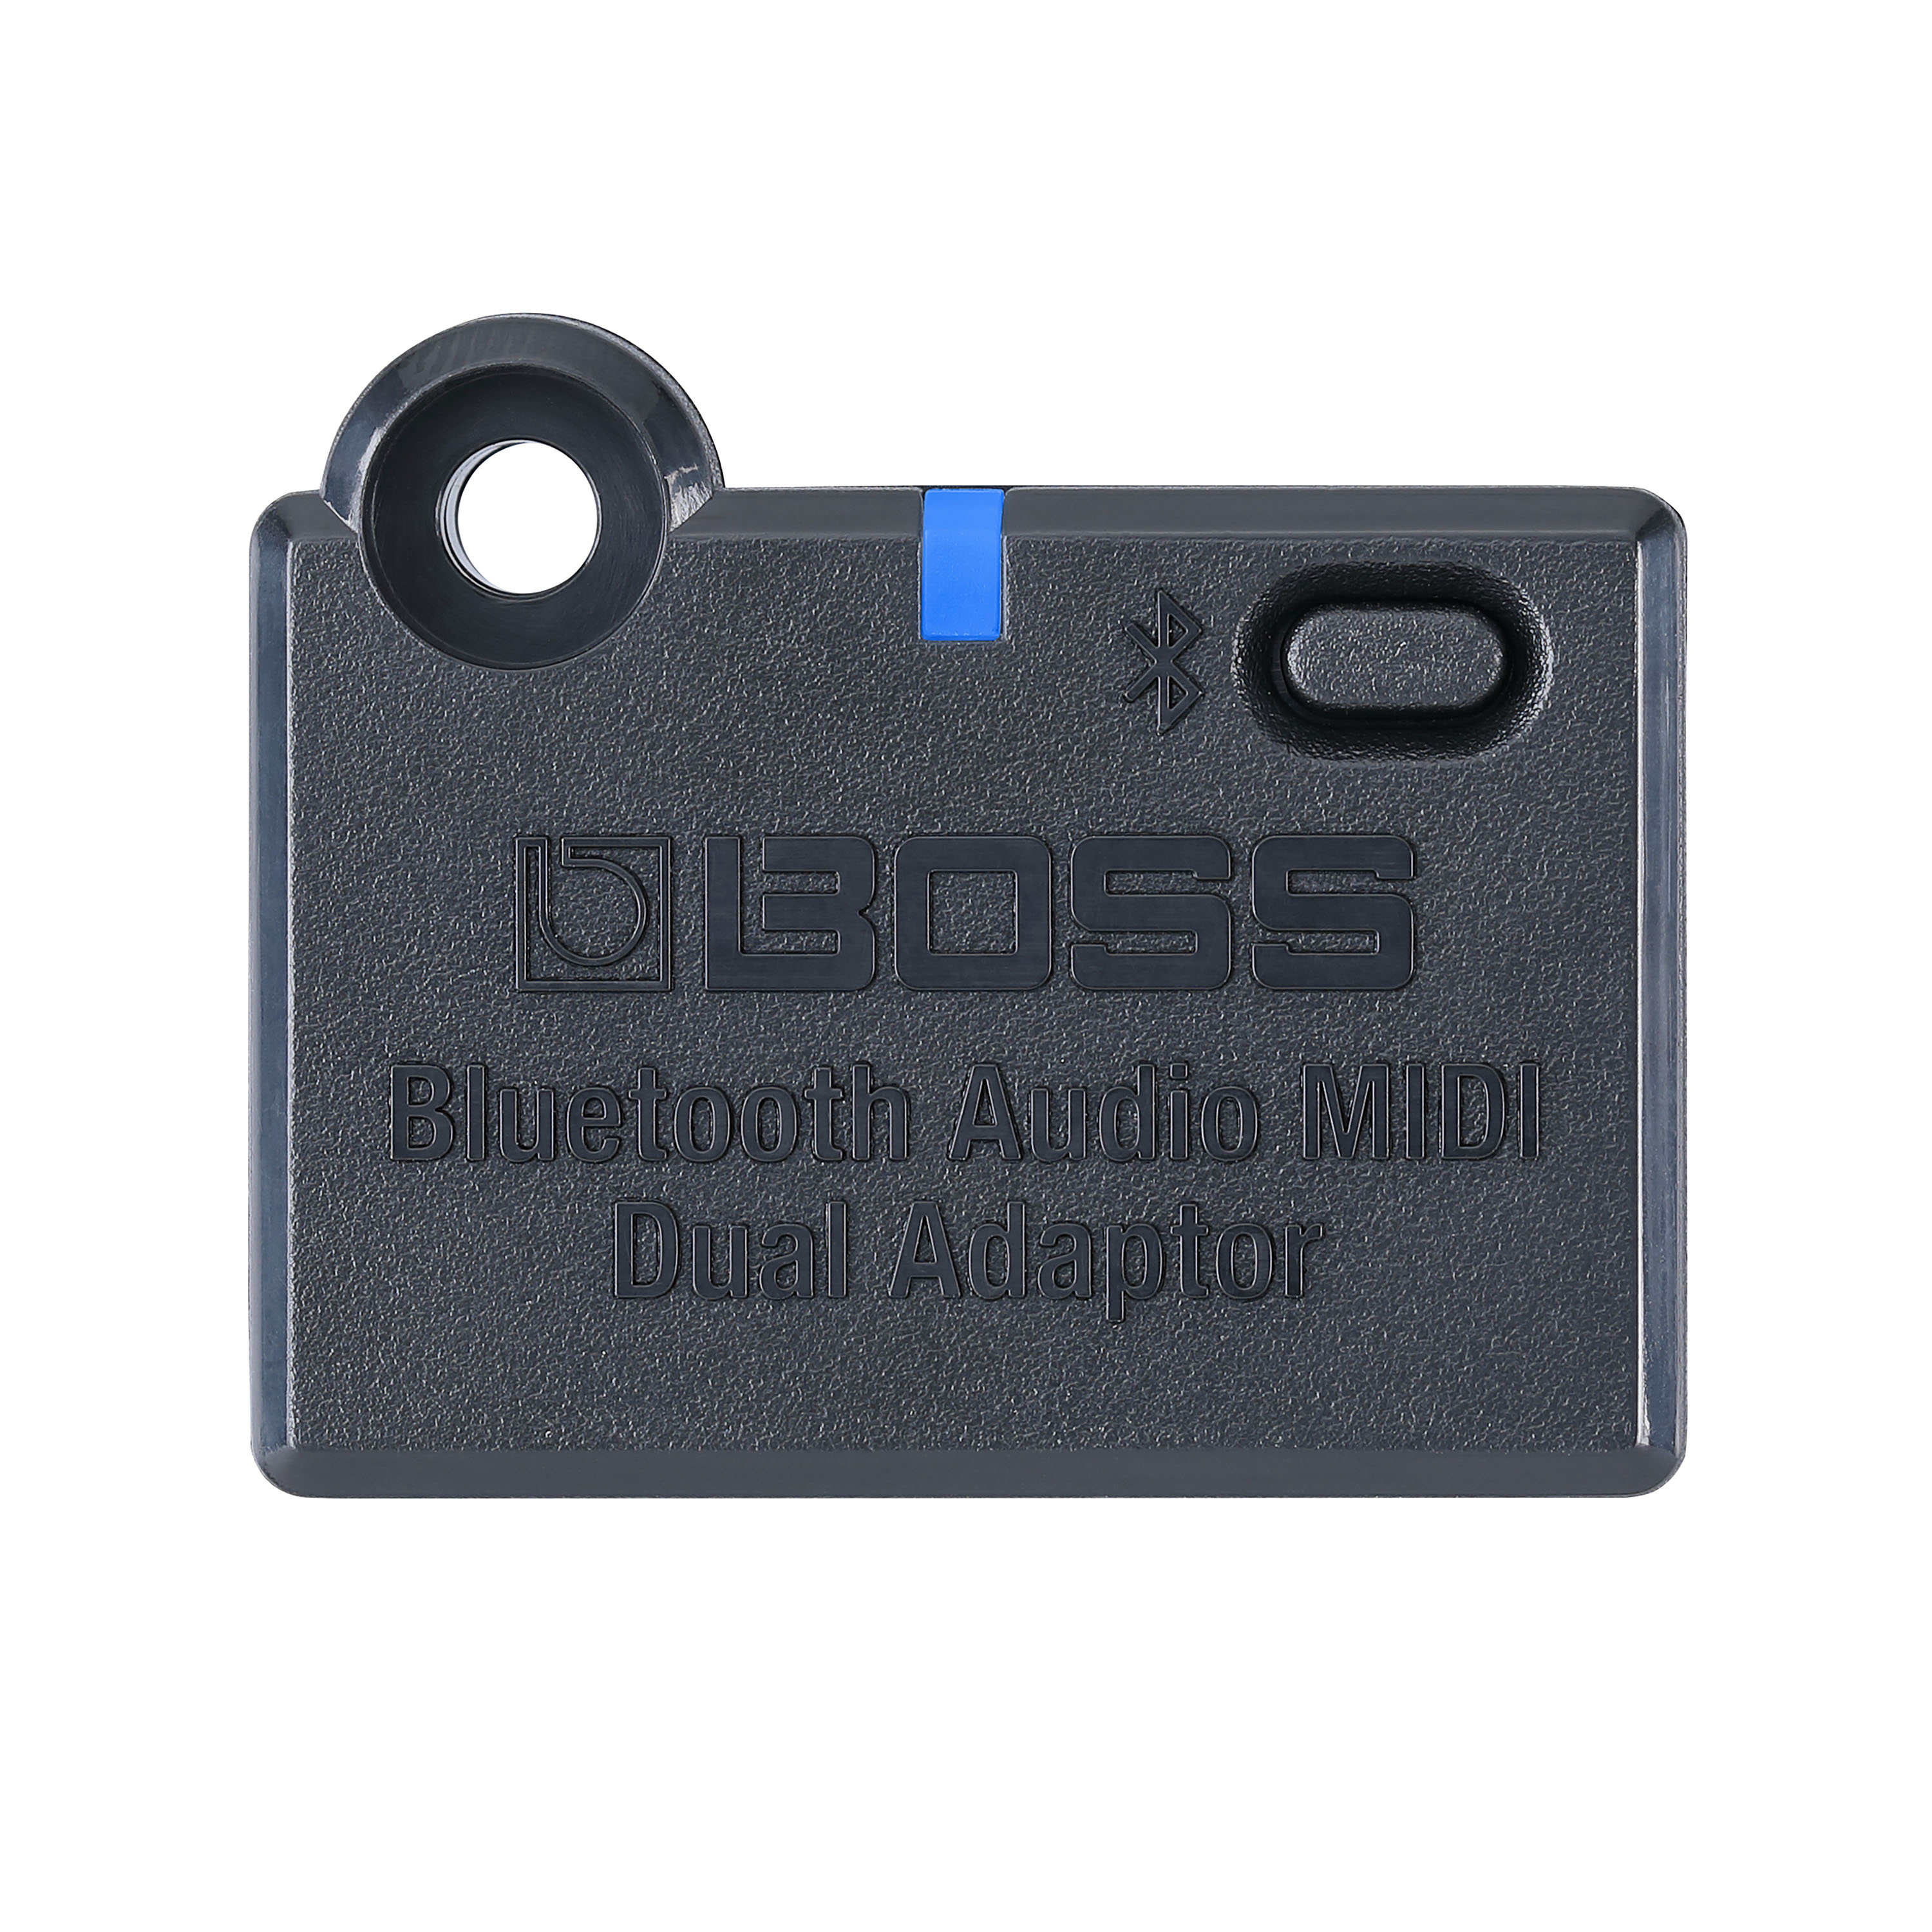 Boss Bluetooth Audio Adaptator - Divers Accessoires & PiÈces Pour Effets - Variation 1